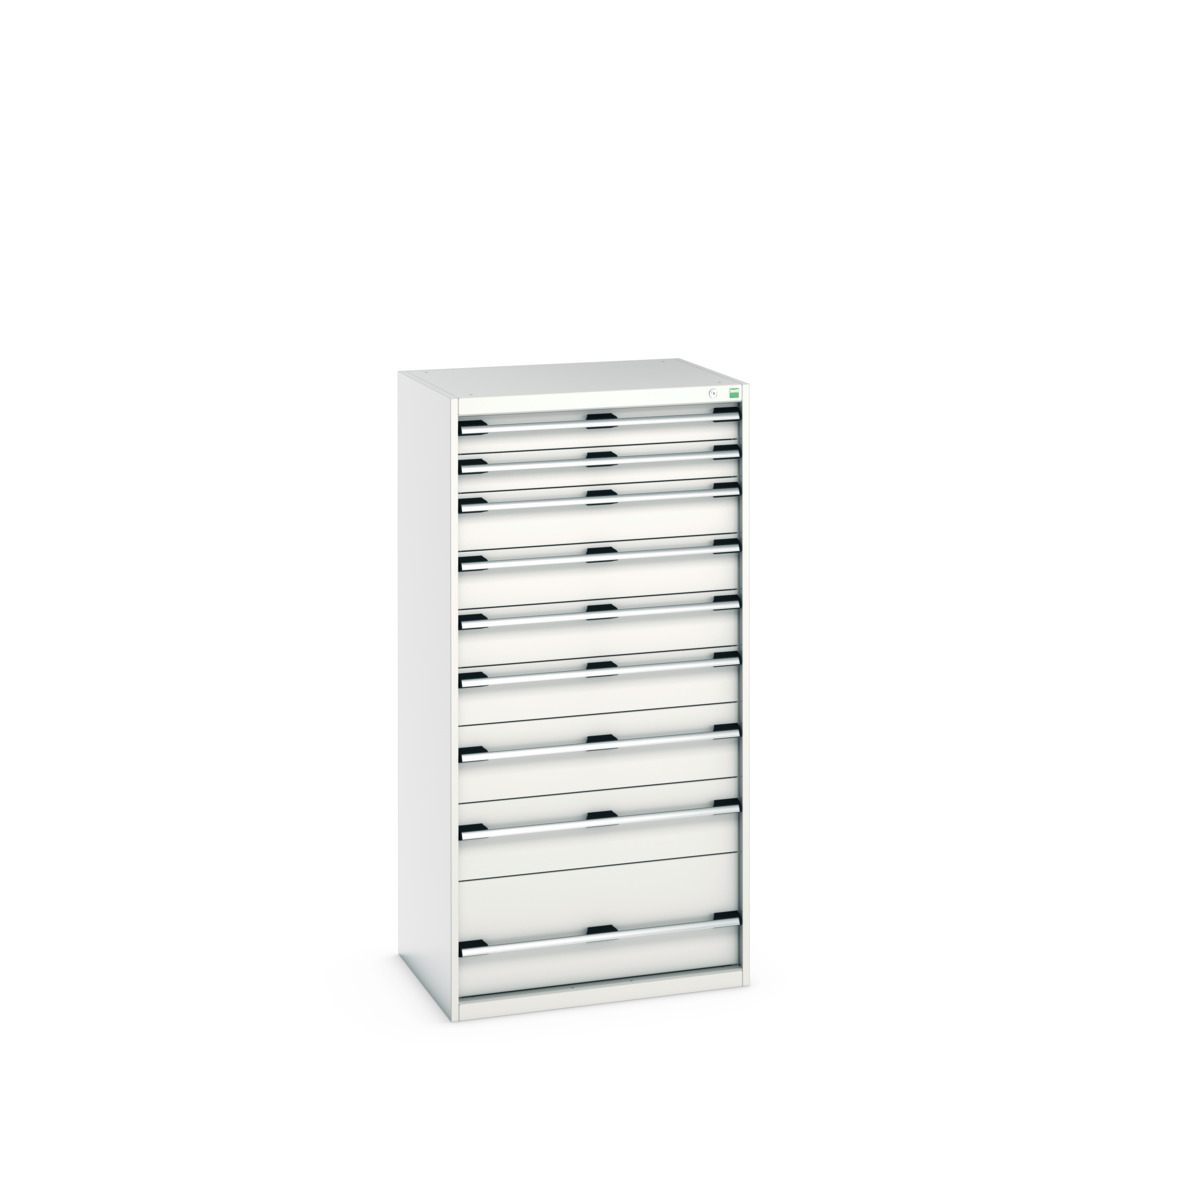 40020067.16V - cubio drawer cabinet